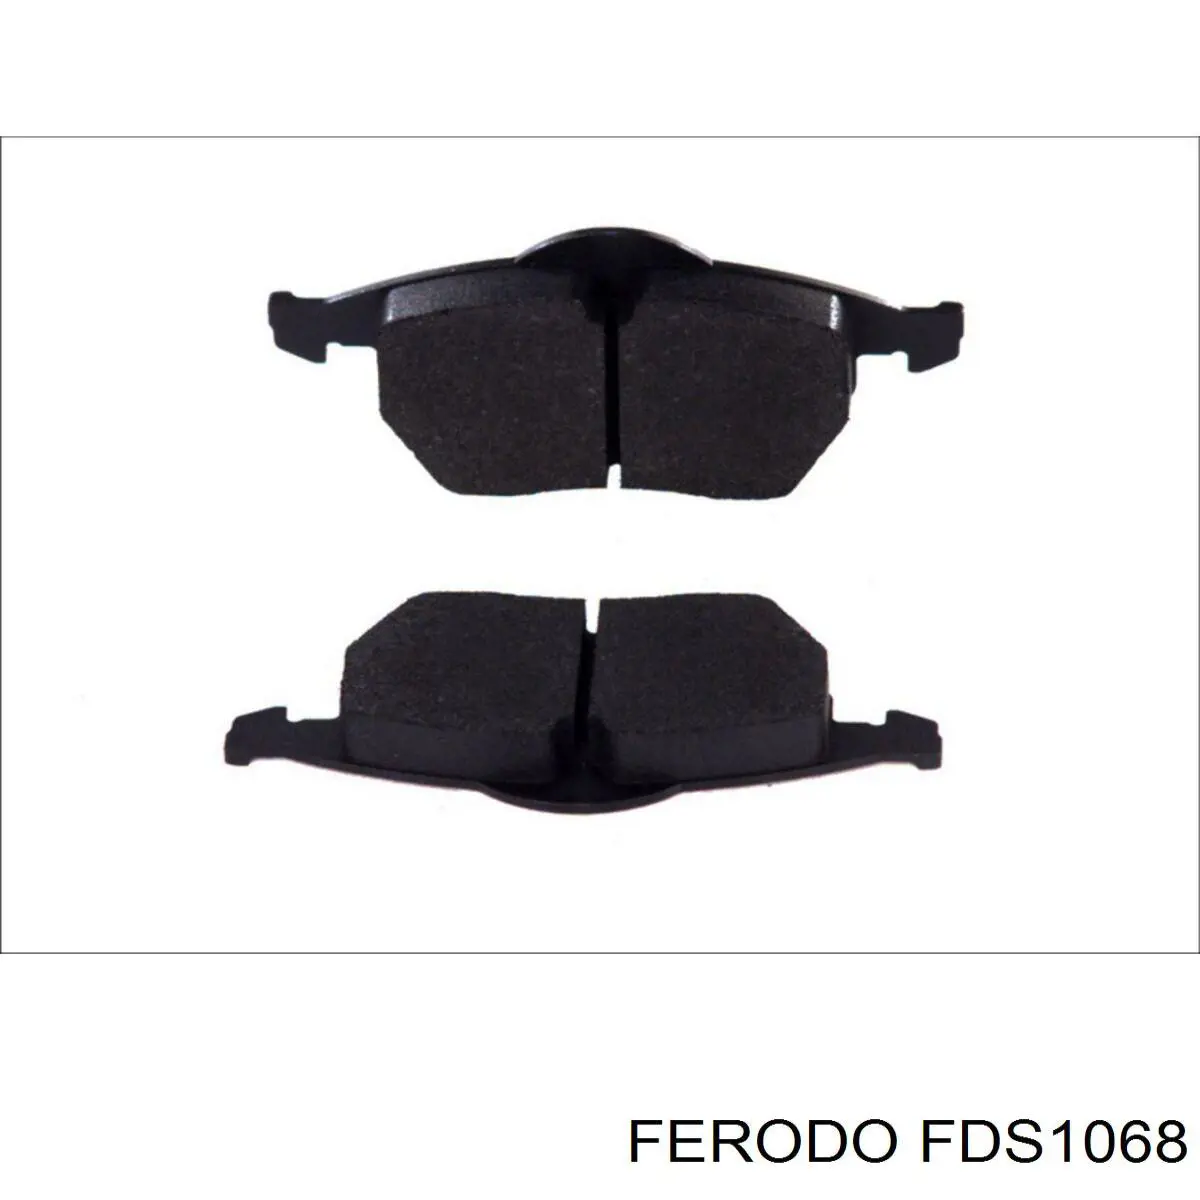 FDS1068 Ferodo pastillas de freno delanteras